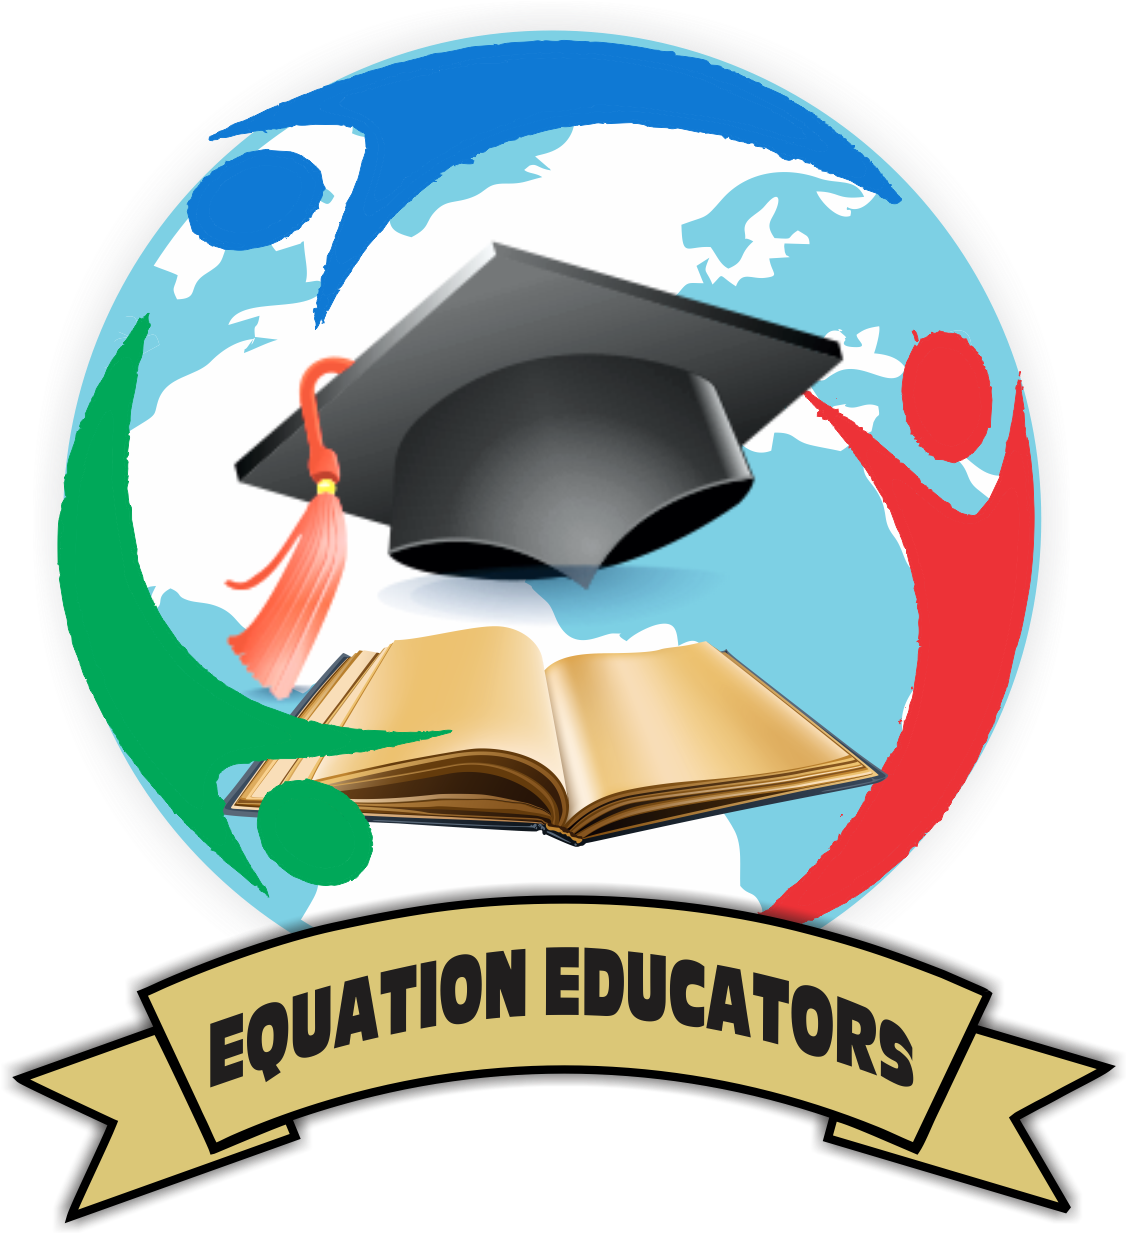 Equation Educators Africa Official Website - Emblem (1455x1500)